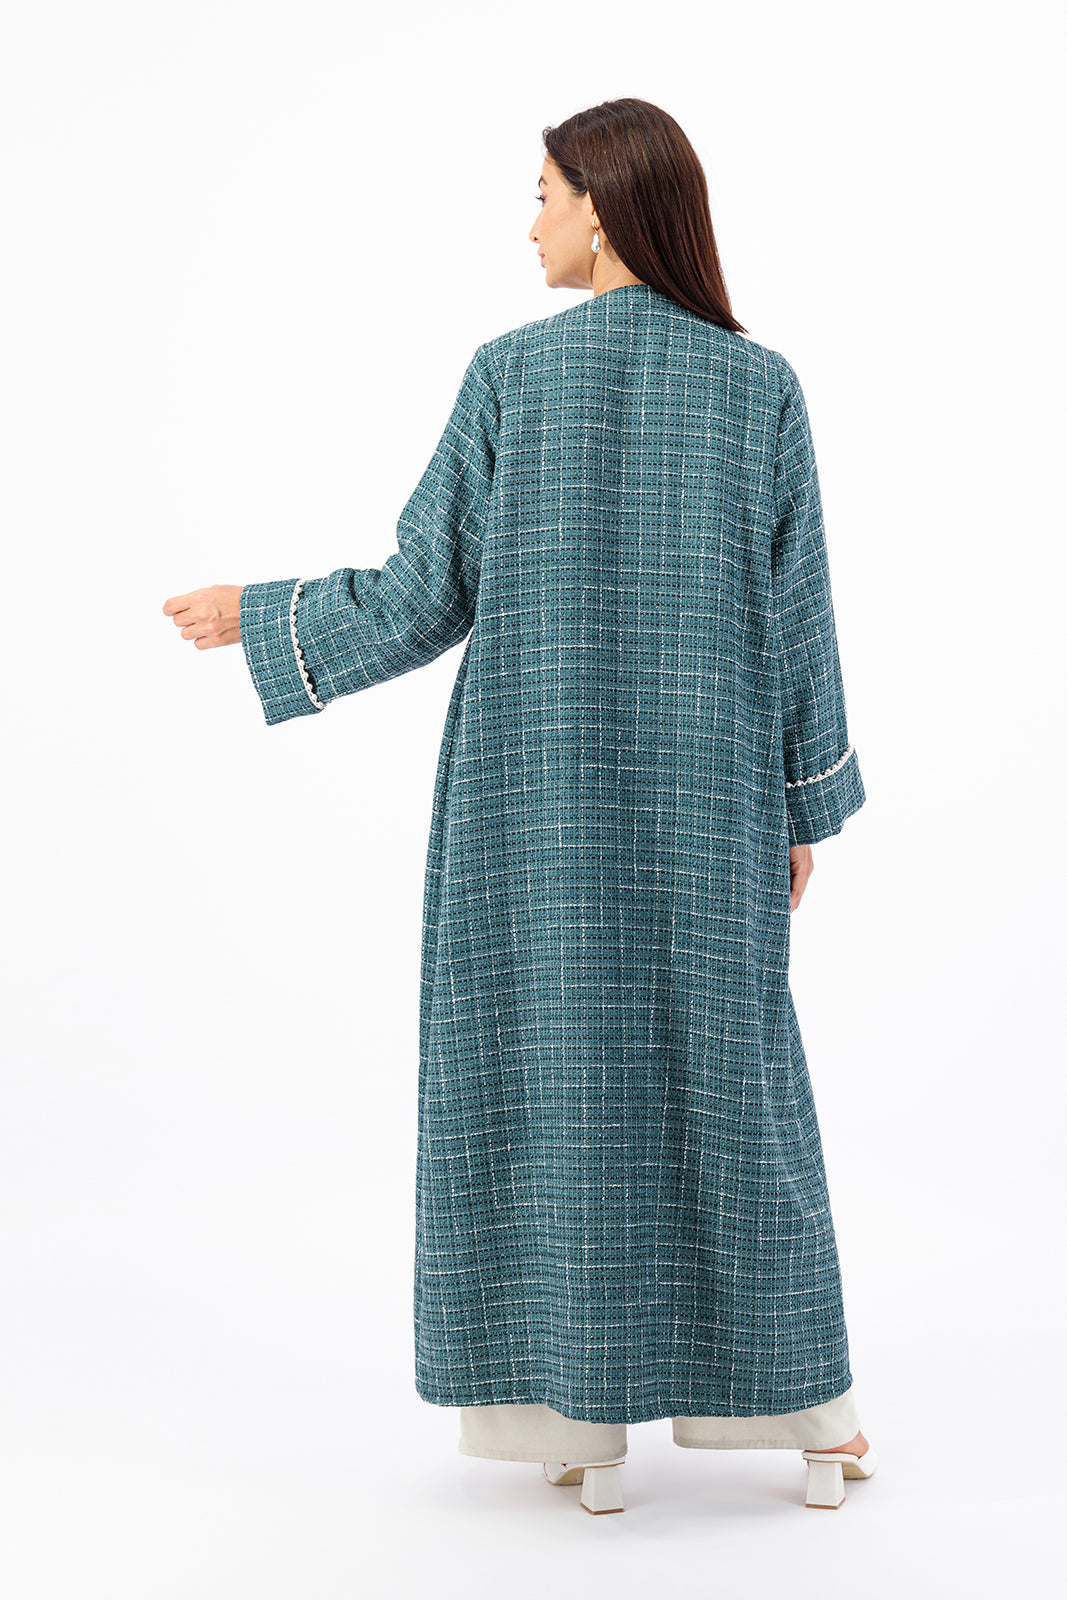 Timeless Tweed trench coat style abaya